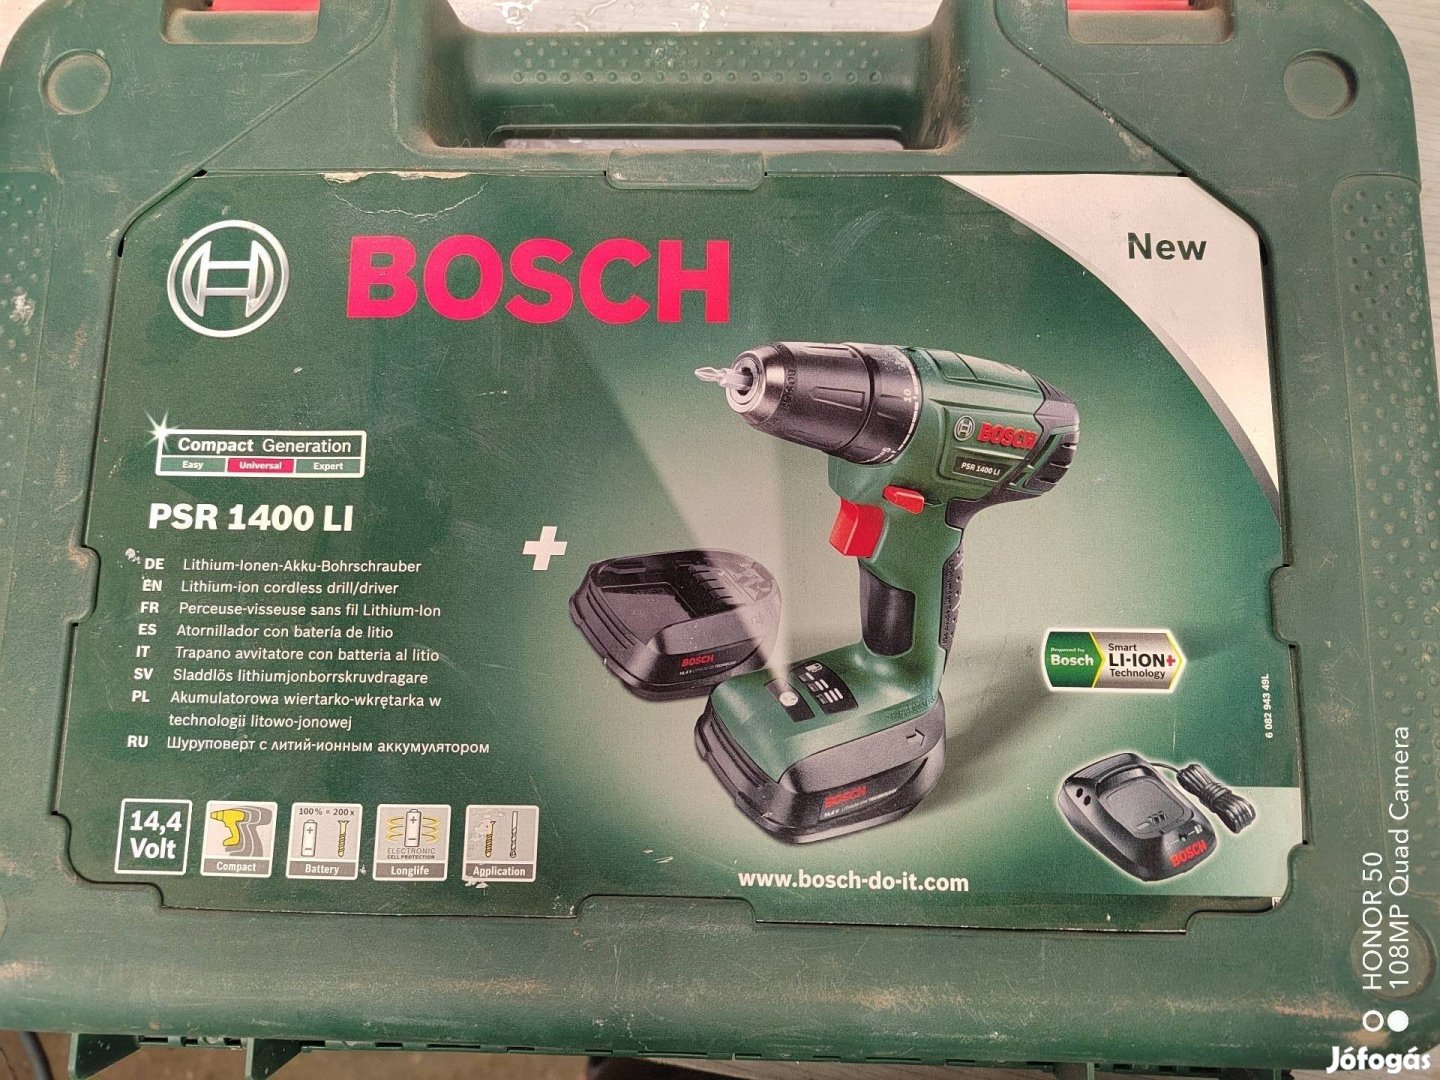 Bosch psr 1400 li